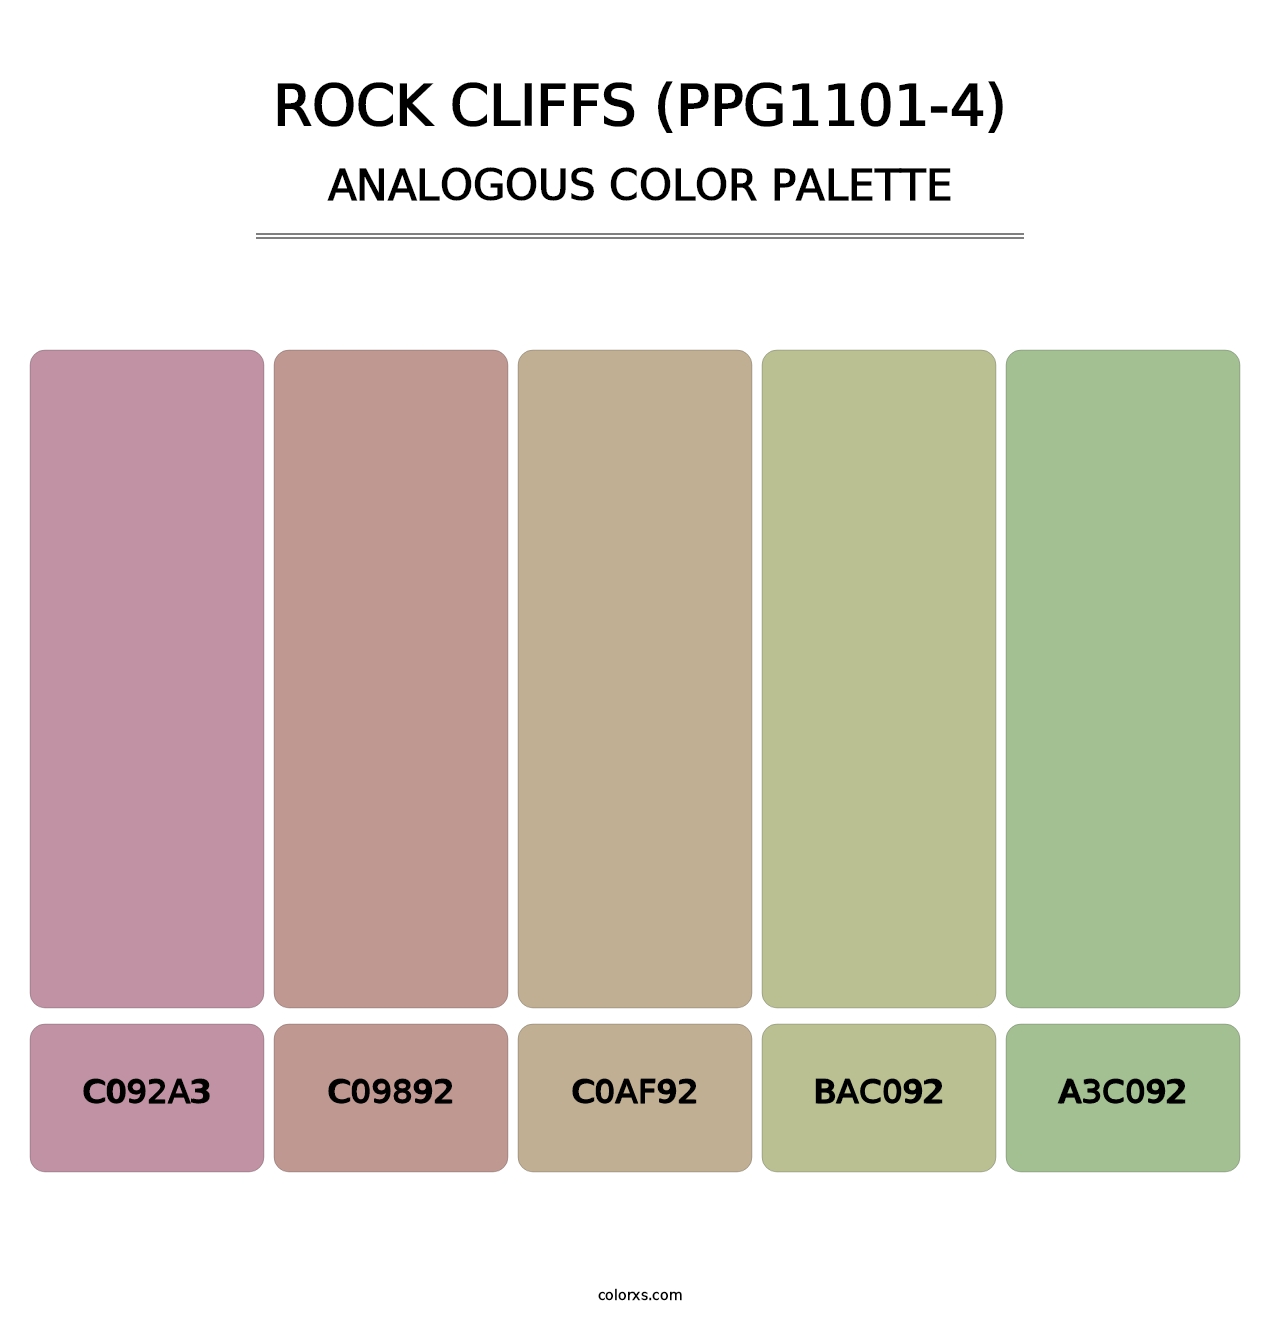 Rock Cliffs (PPG1101-4) - Analogous Color Palette